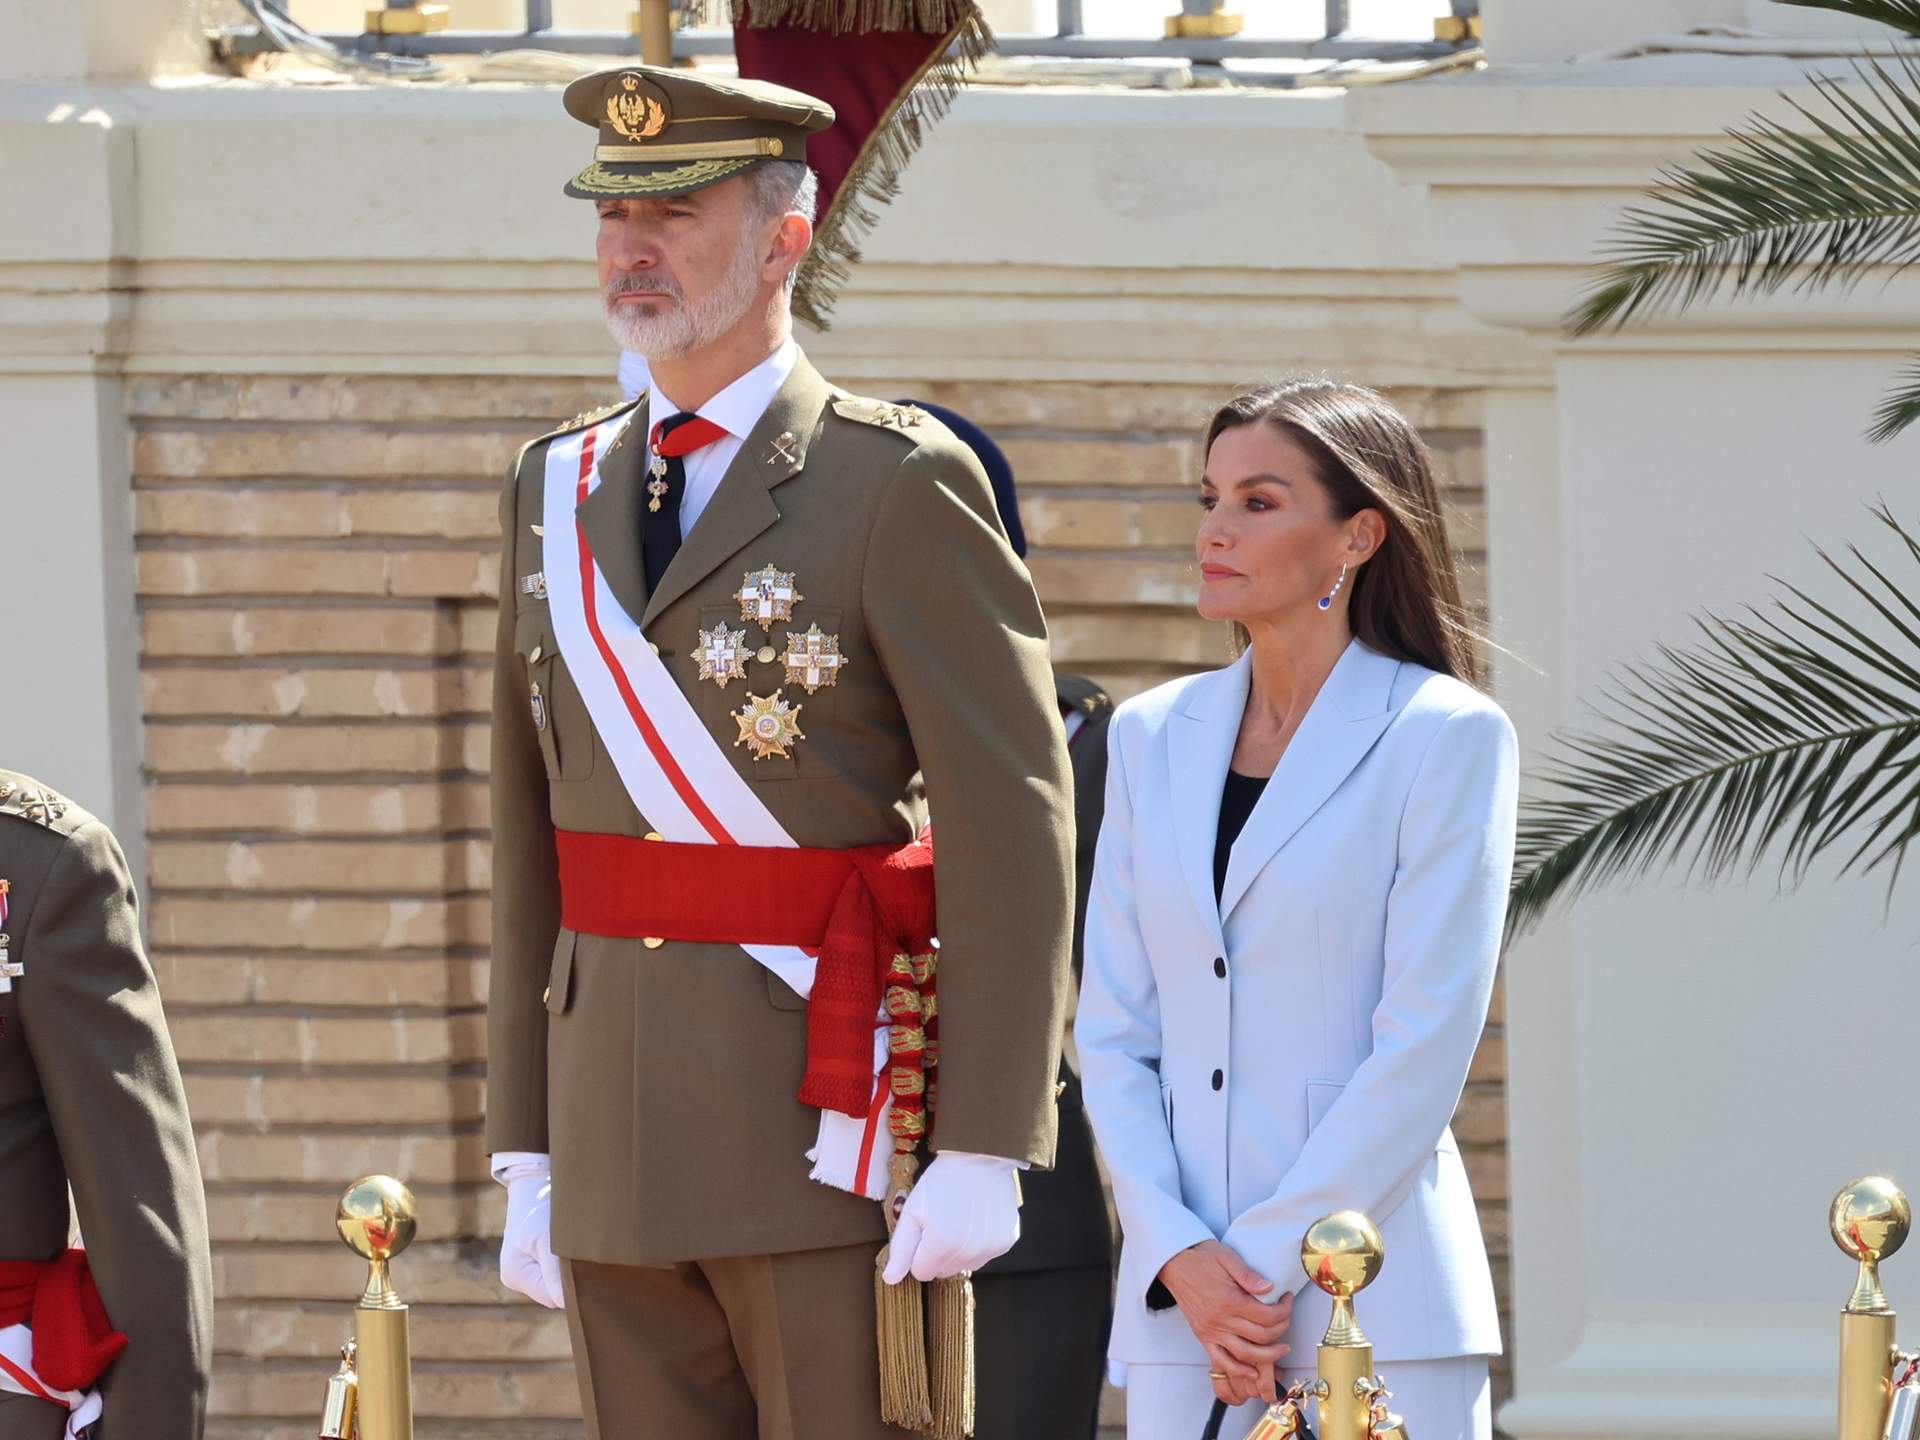 El Rey Felipe VI vuelve a jurar bandera 40 años después